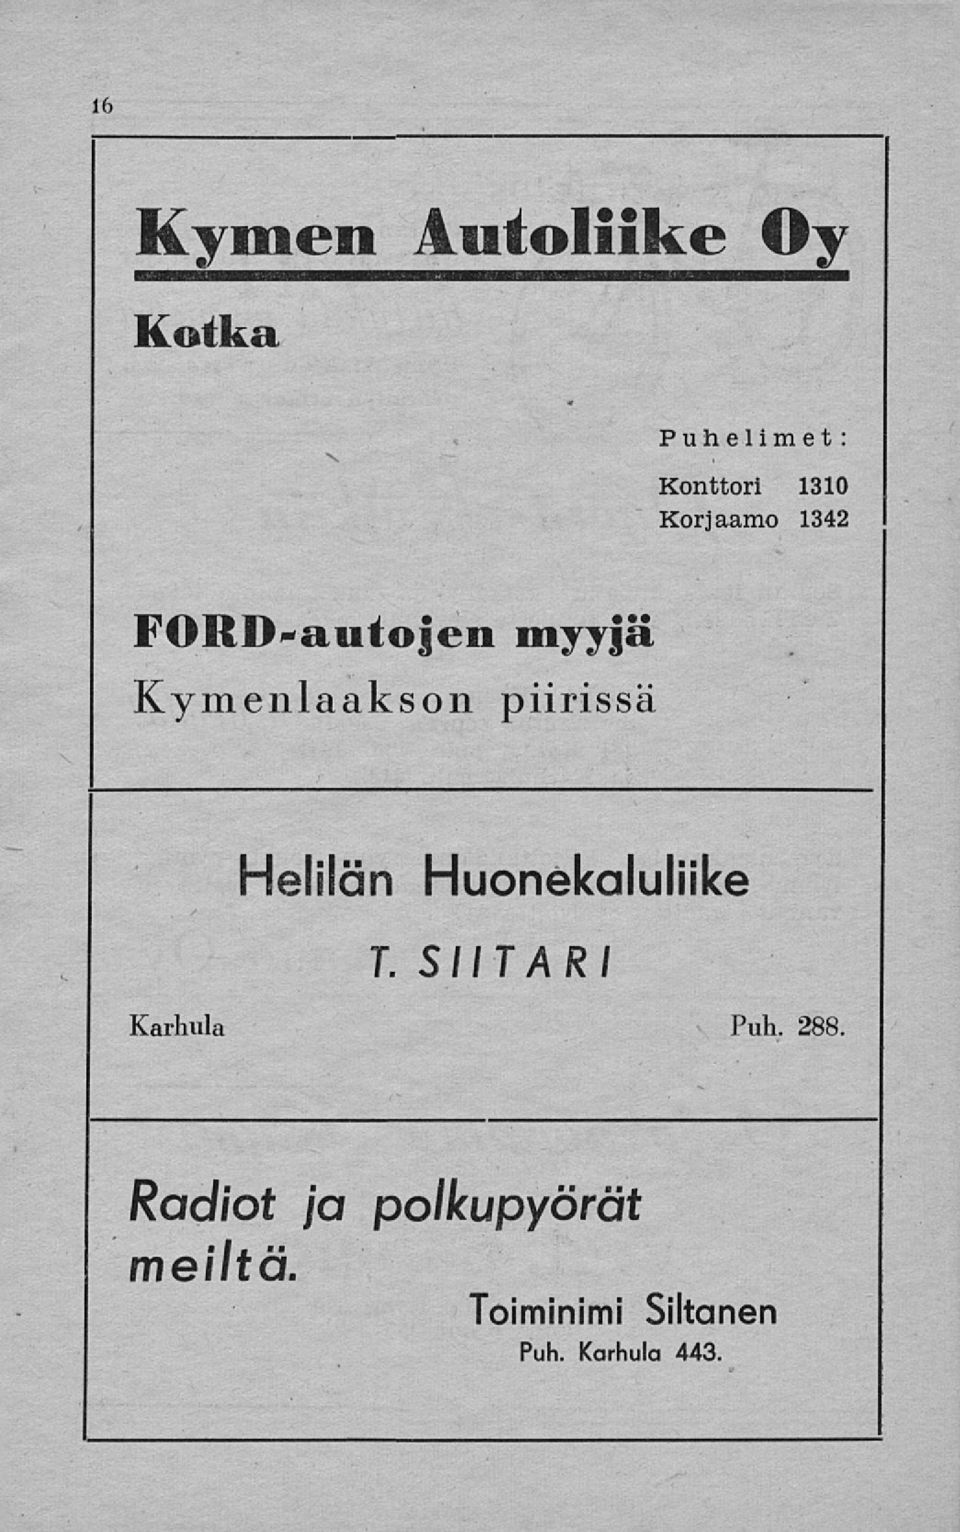 Helilän Huonekaluliike T. SIITÄRI Karhula Puh. 288.